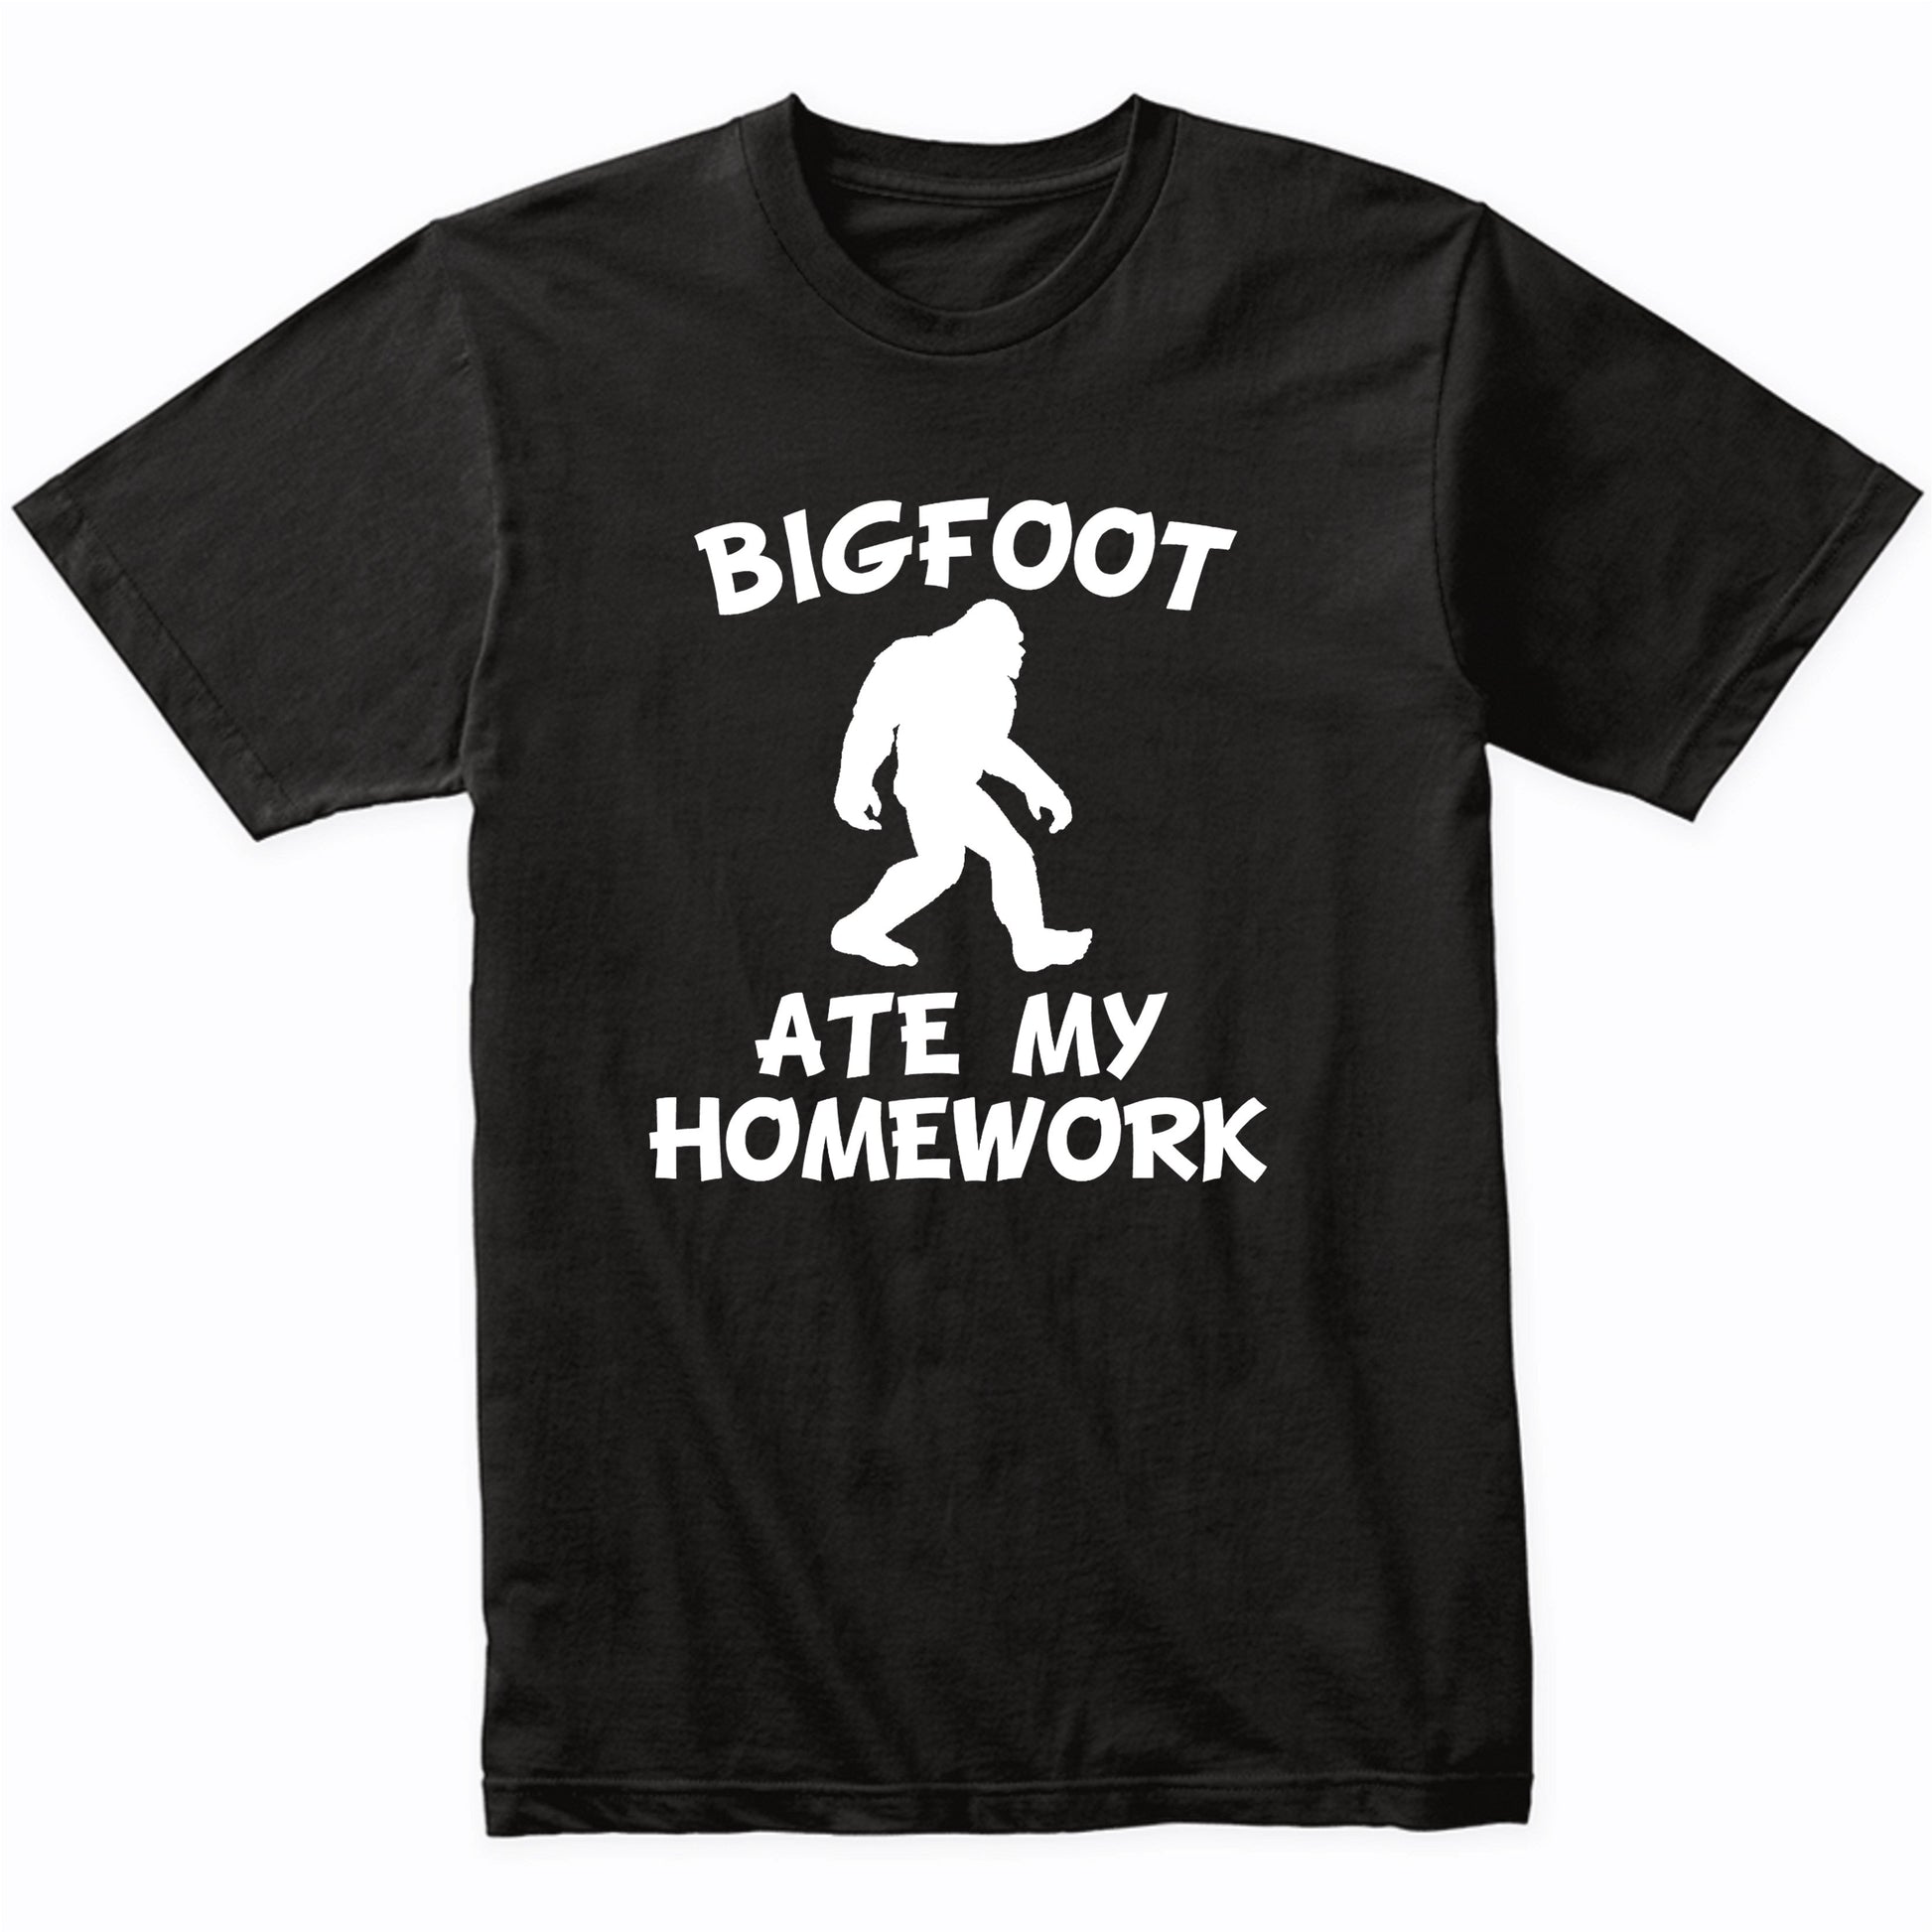 Funny Bigfoot Shirt Bigfoot Ate My Homework